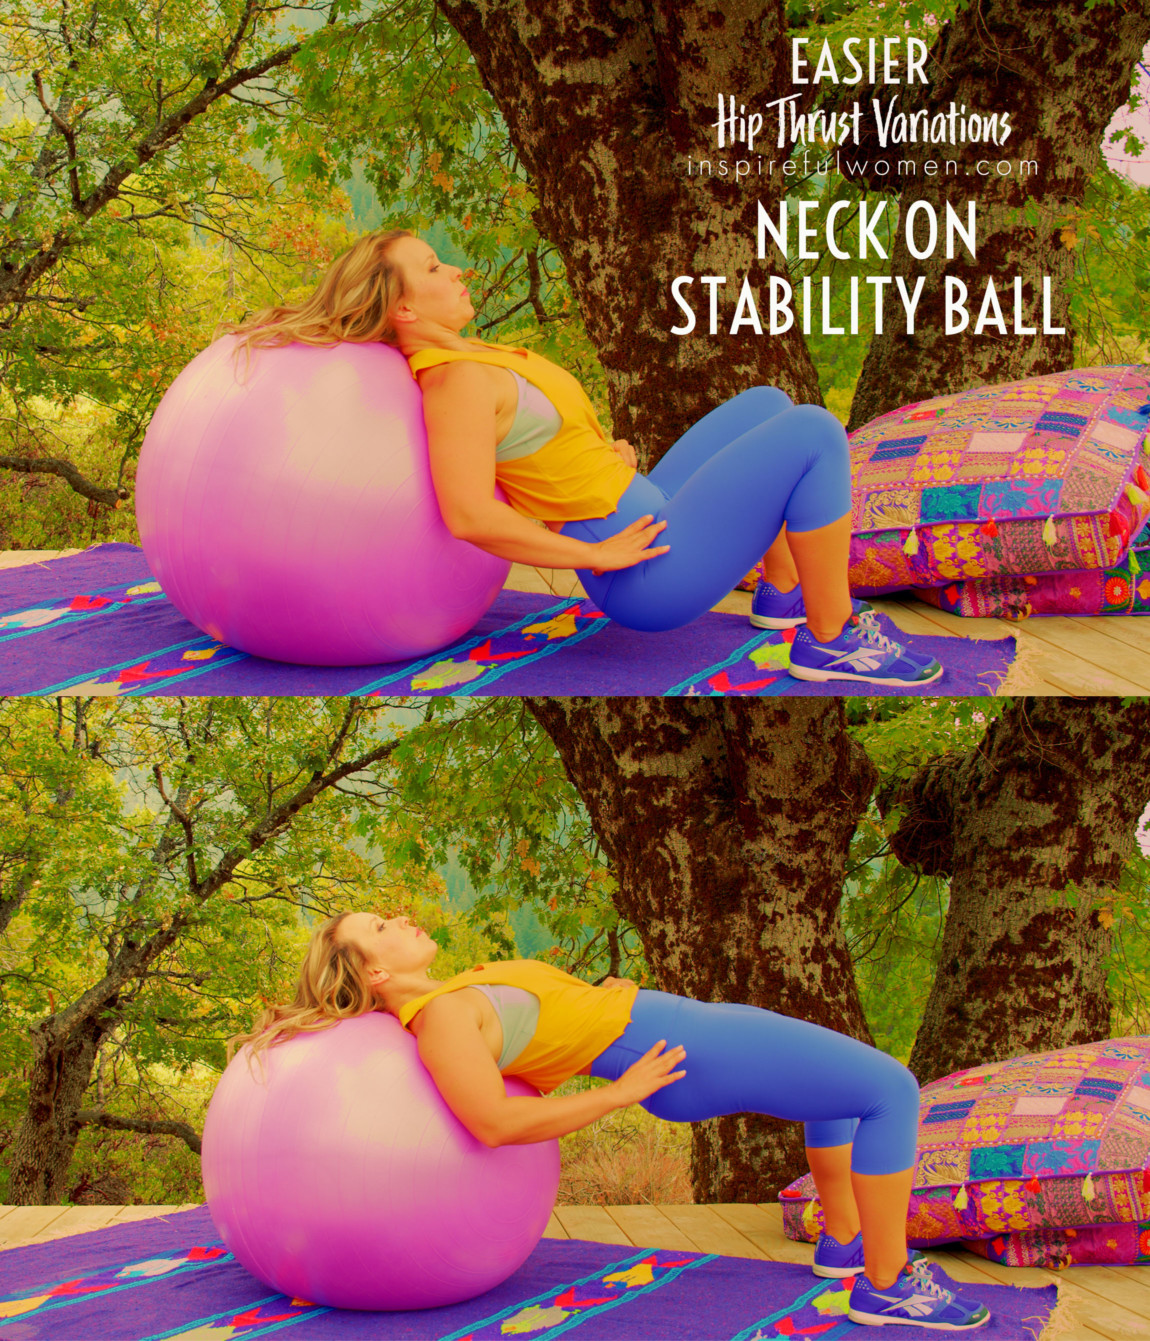 stability-ball-hip-thrust-neck-relax-easier-variation